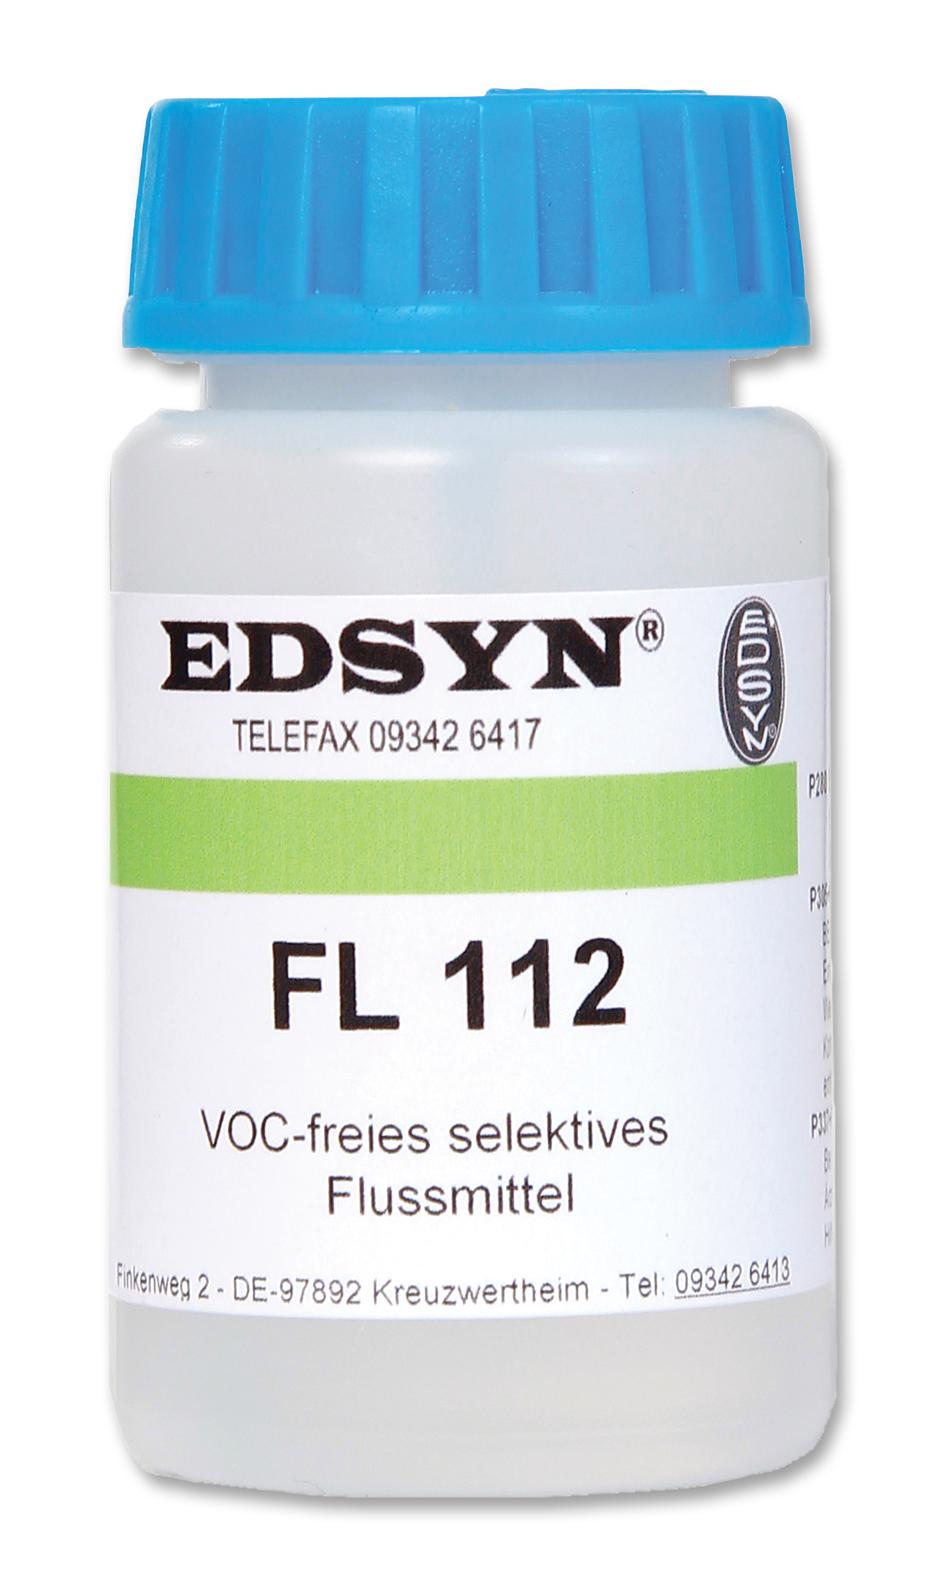 FL 112 FLUXI FLUX NO-CLEAN, VOC-FREE, F-SW34, 30ML EDSYN